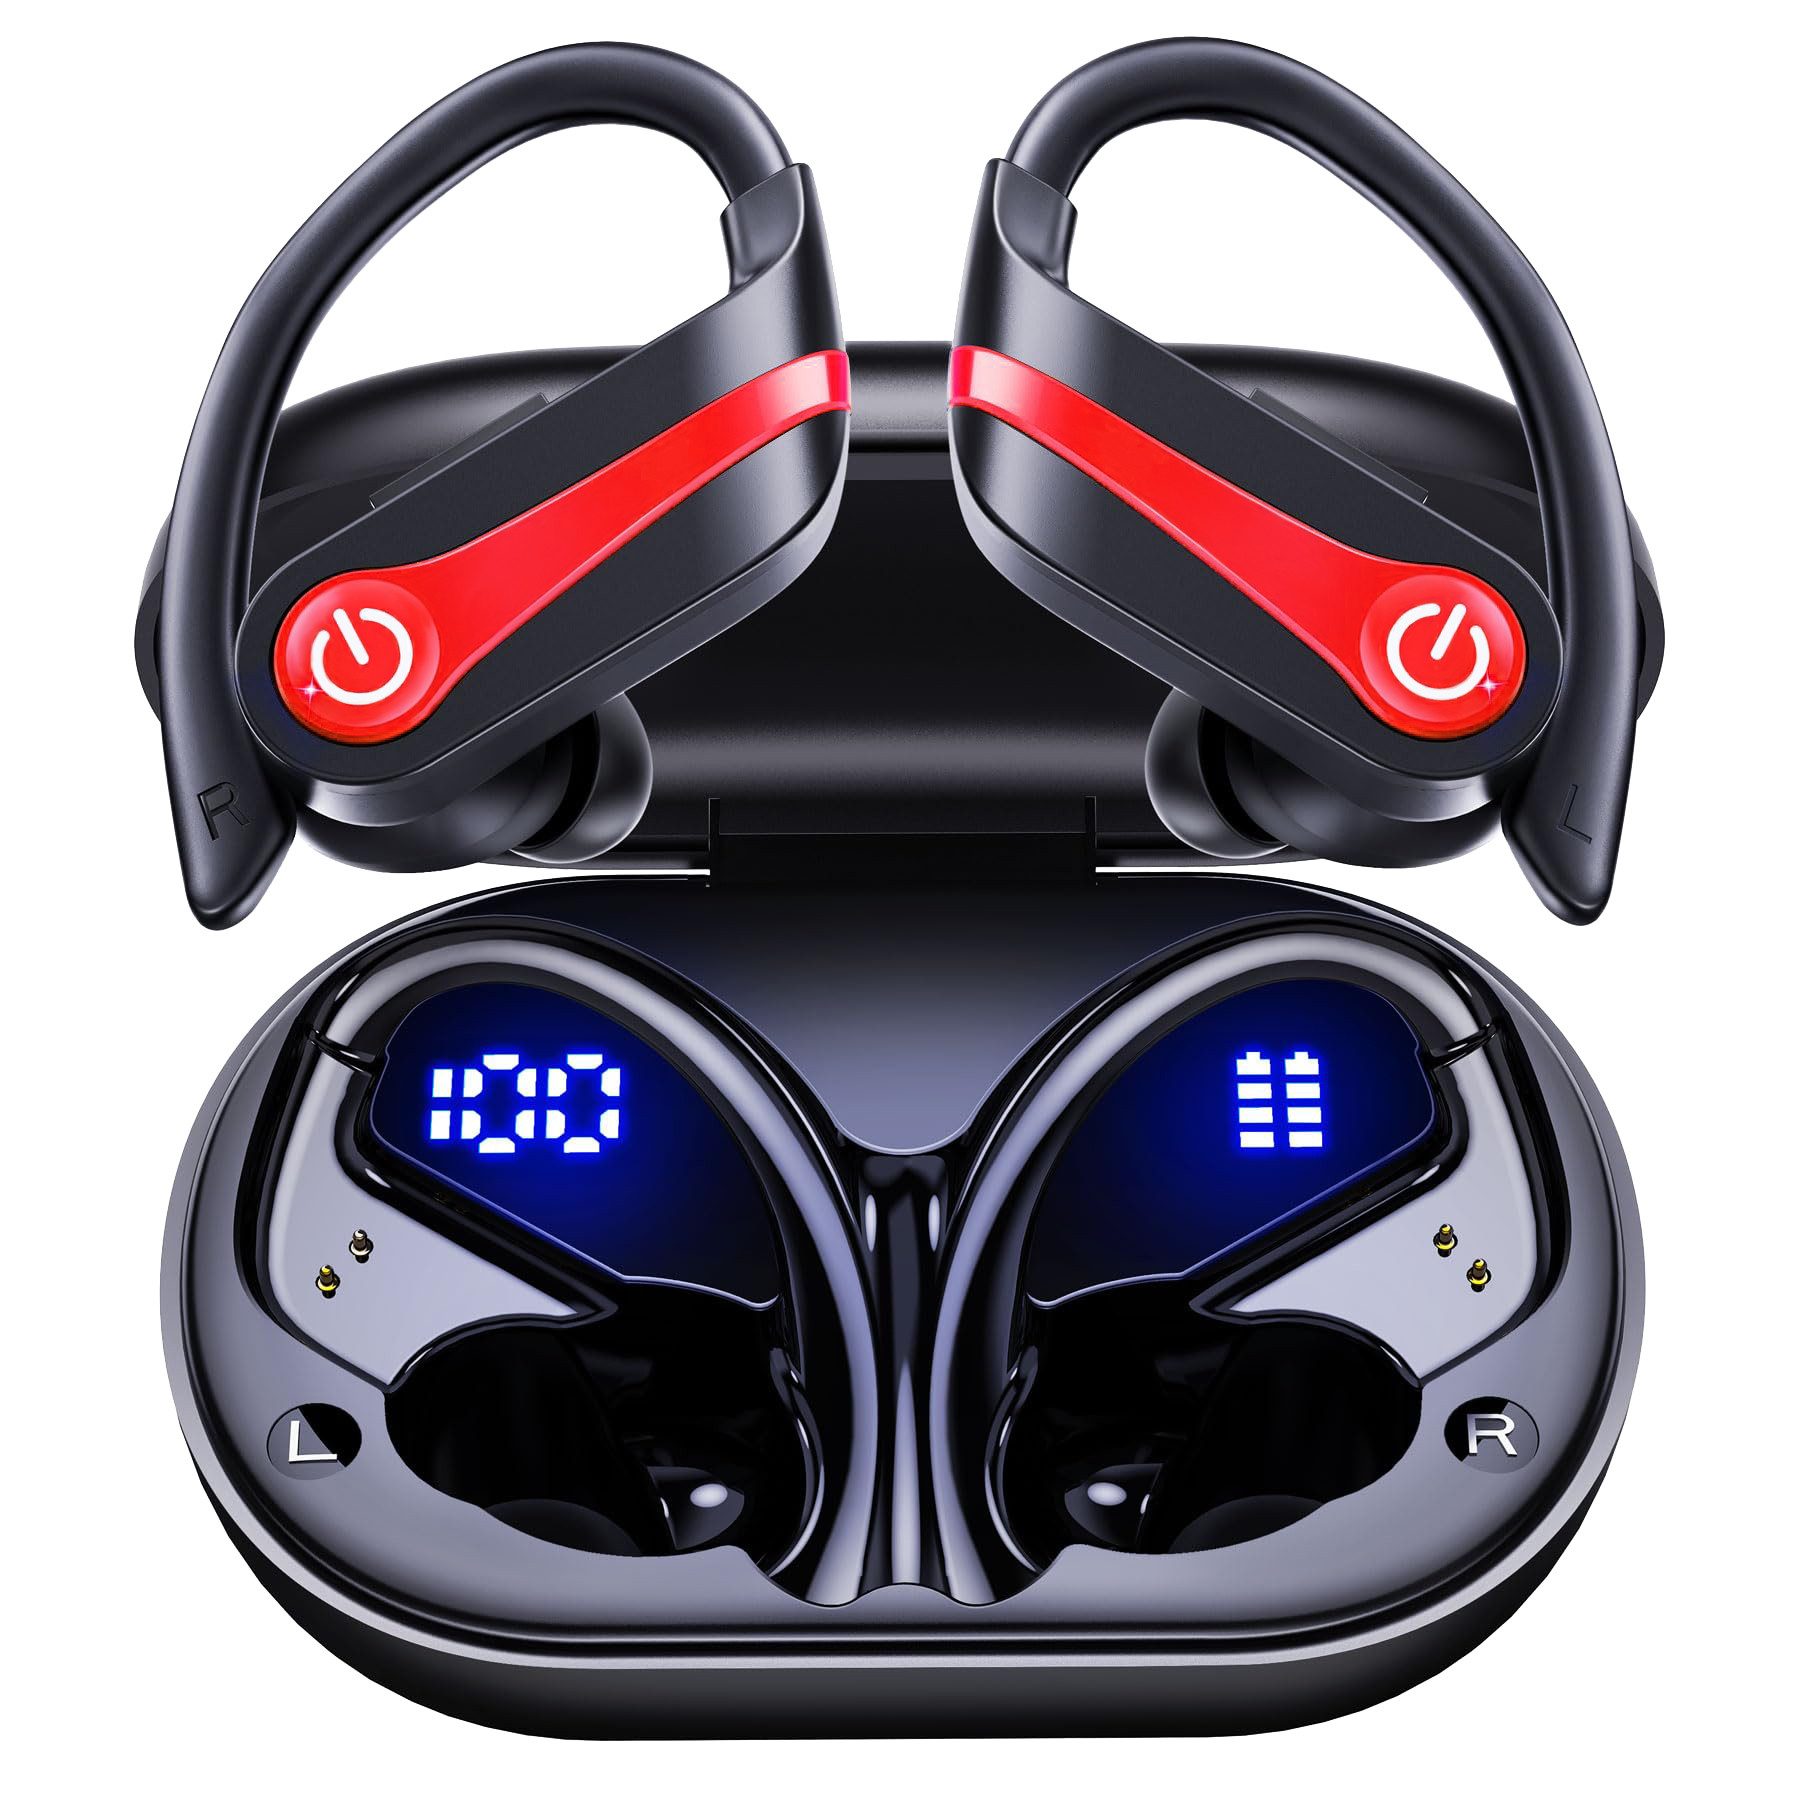 Cbei Kabelloses Bluetooth-Headset wireless In-Ear-Kopfhörer Sport-Kopfhörer In-Ear-Kopfhörer (Ladeetui mit LED Anzeige, Bluetooth 5.3, am Ohr montierte Sportgeräuschunterdrückung, wasserdicht IPX7, Geräuschreduzierung, Ideal for running, training, gym, traveling, even rainy days)